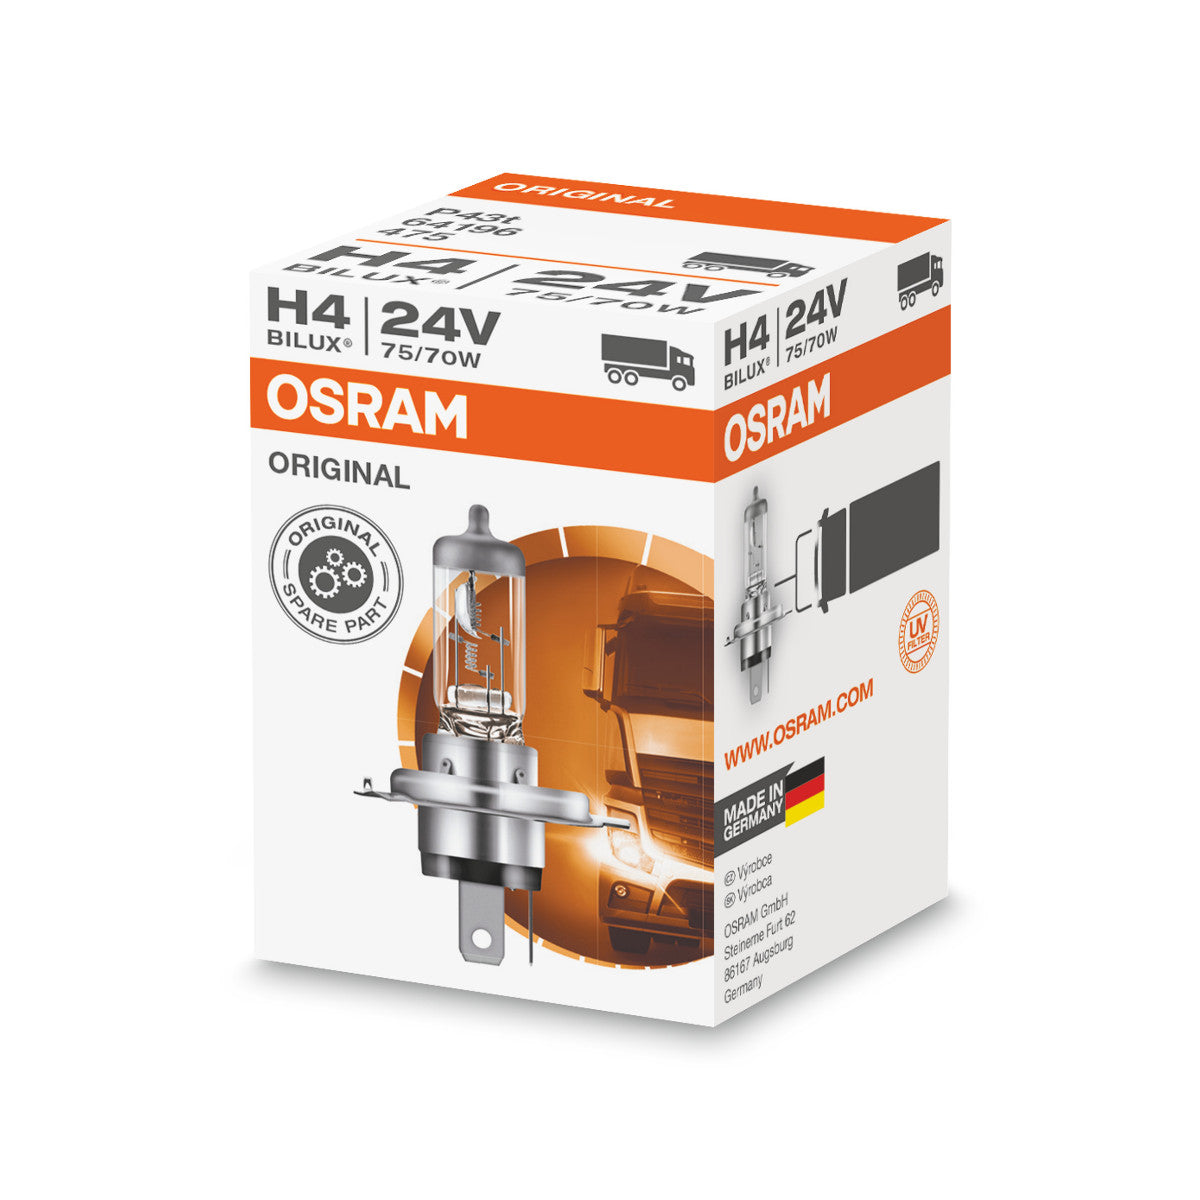 OSRAM ORIGINAL LINE - H4 - 24 V - 7570 W - Halogenstrålkastarlampa - Folding Box